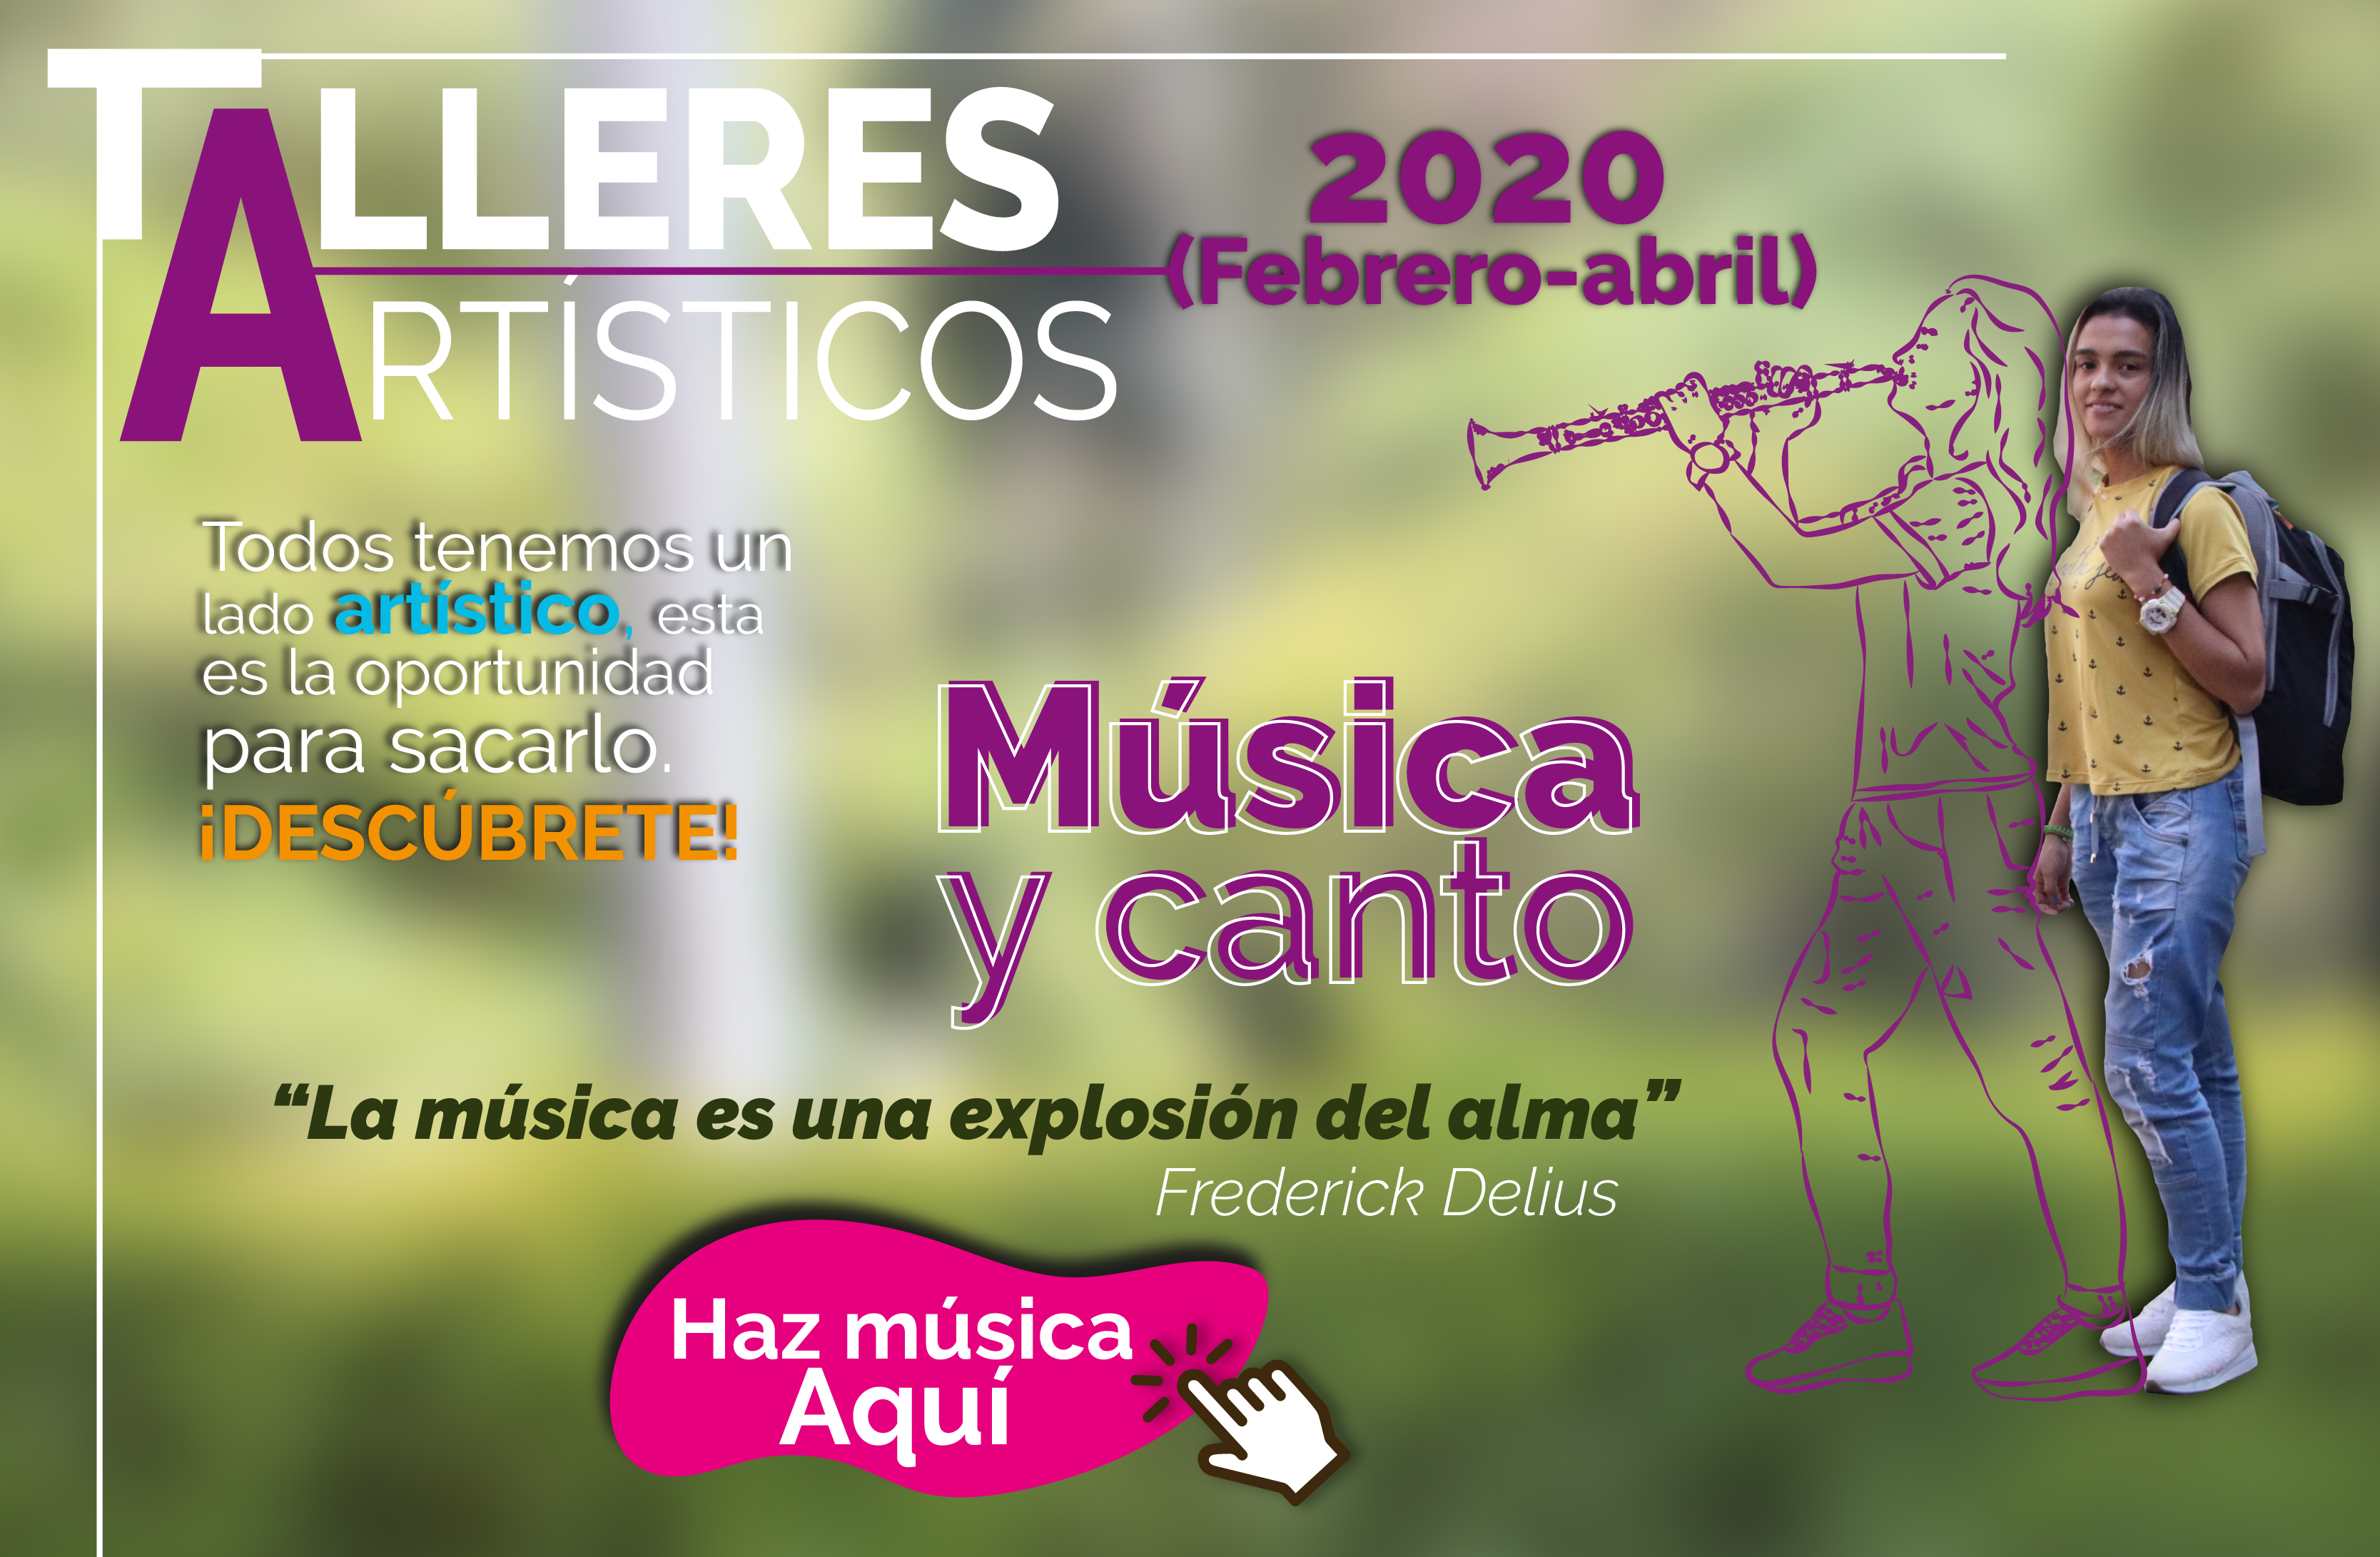 Talleres Artisticos 2020 Banner 1